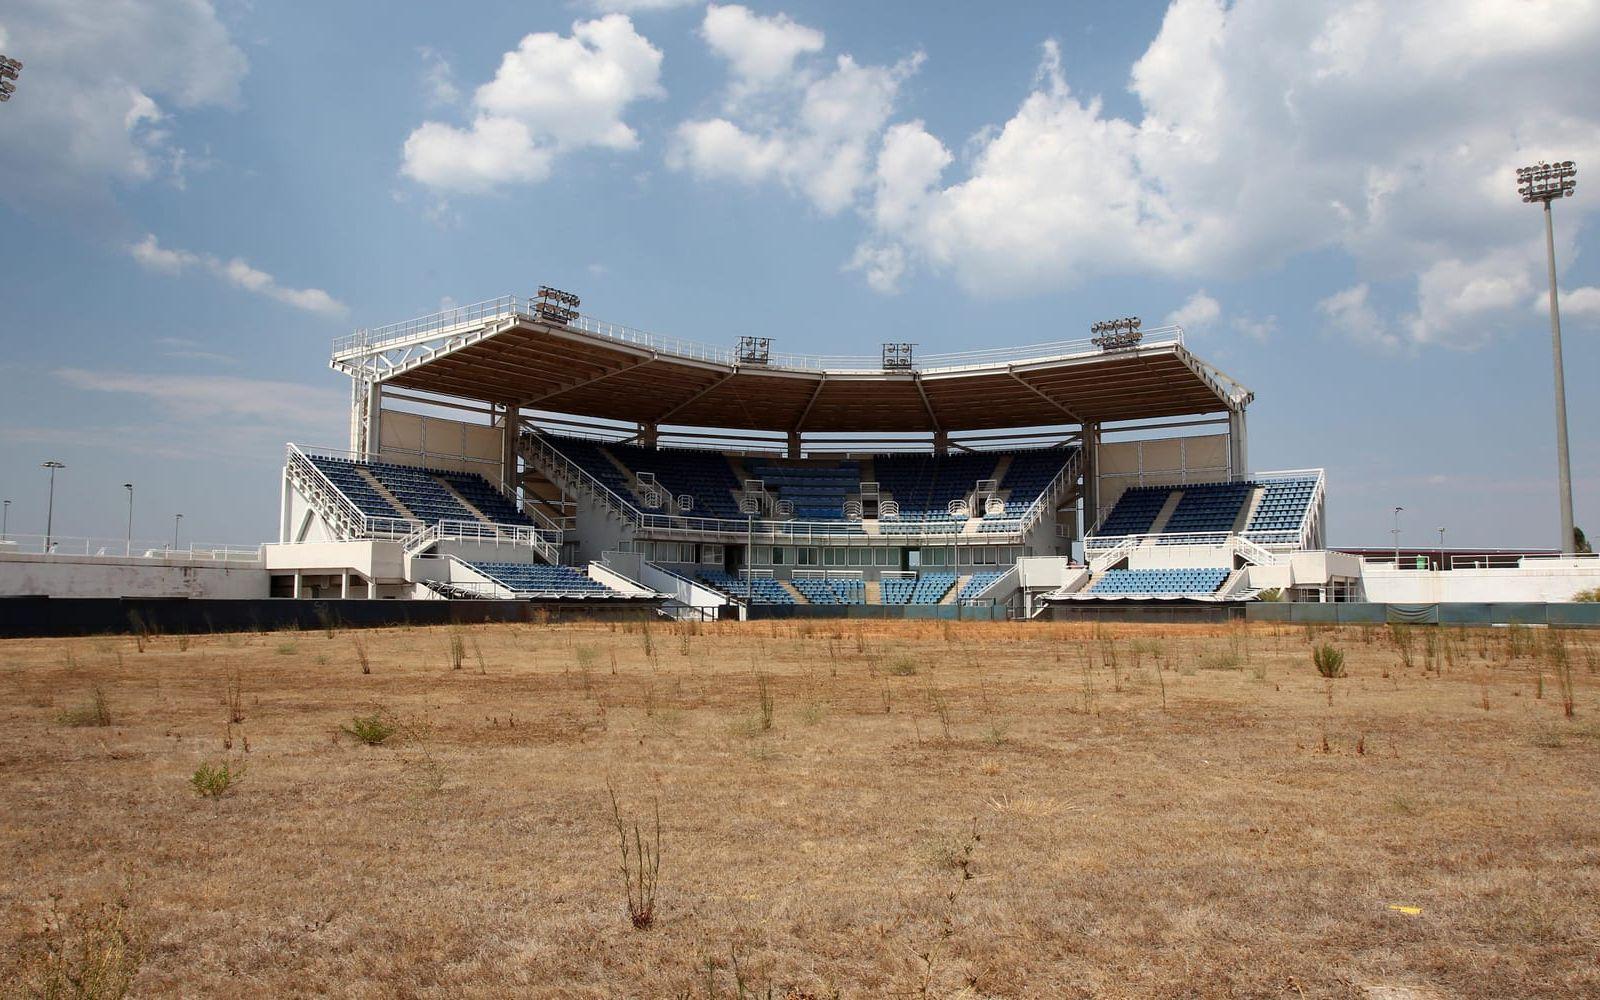 Softboll var en del av det olympiska programmet 1996-2008. I Aten spelades turneringen på den här arenan, som i dag är en sorglig syn. Foto: TT